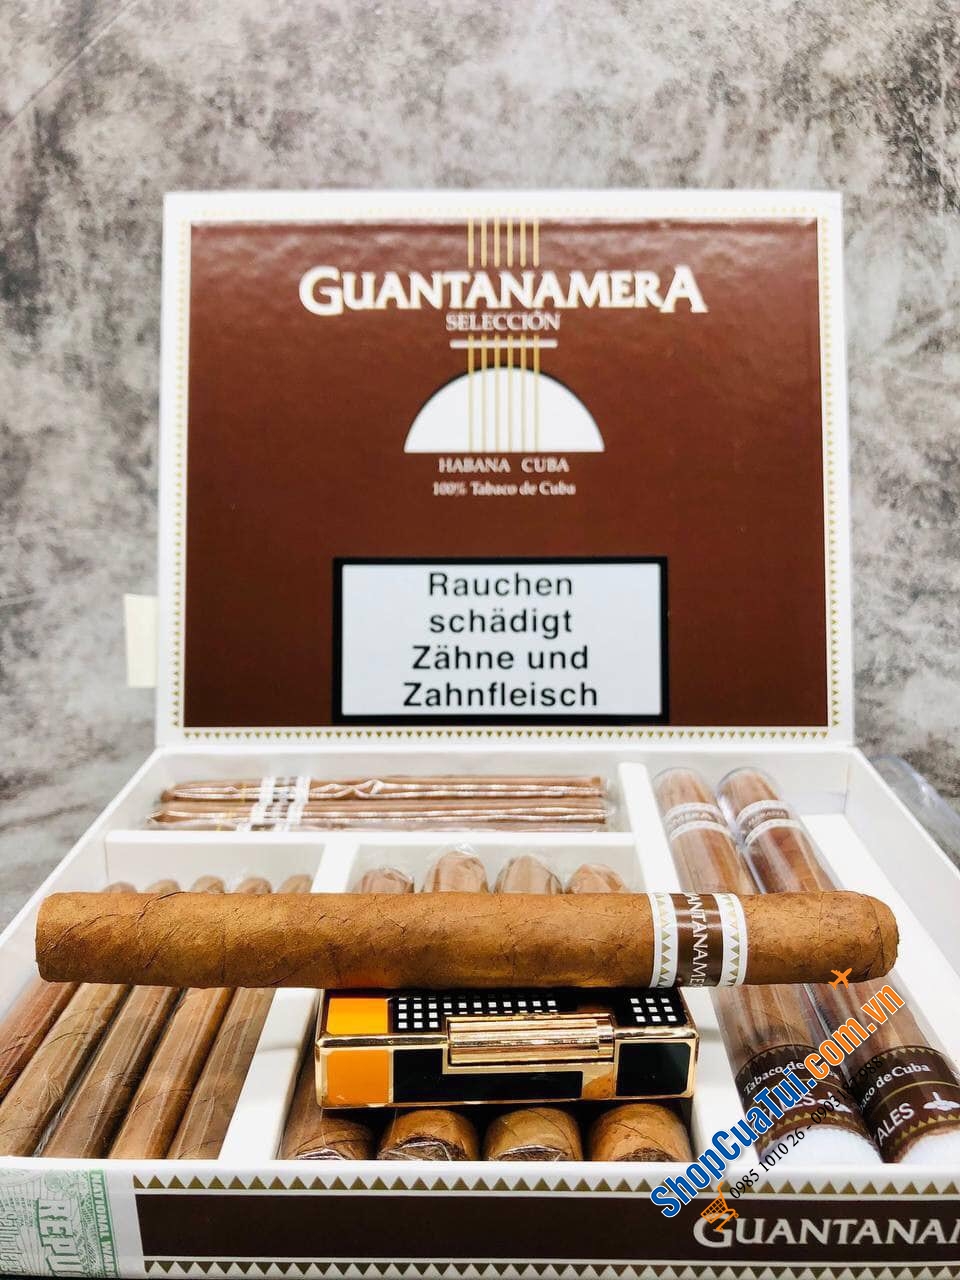 Xì gà Guantanamera box 15 điếu - Cigar nội địa Đức siêu ngon